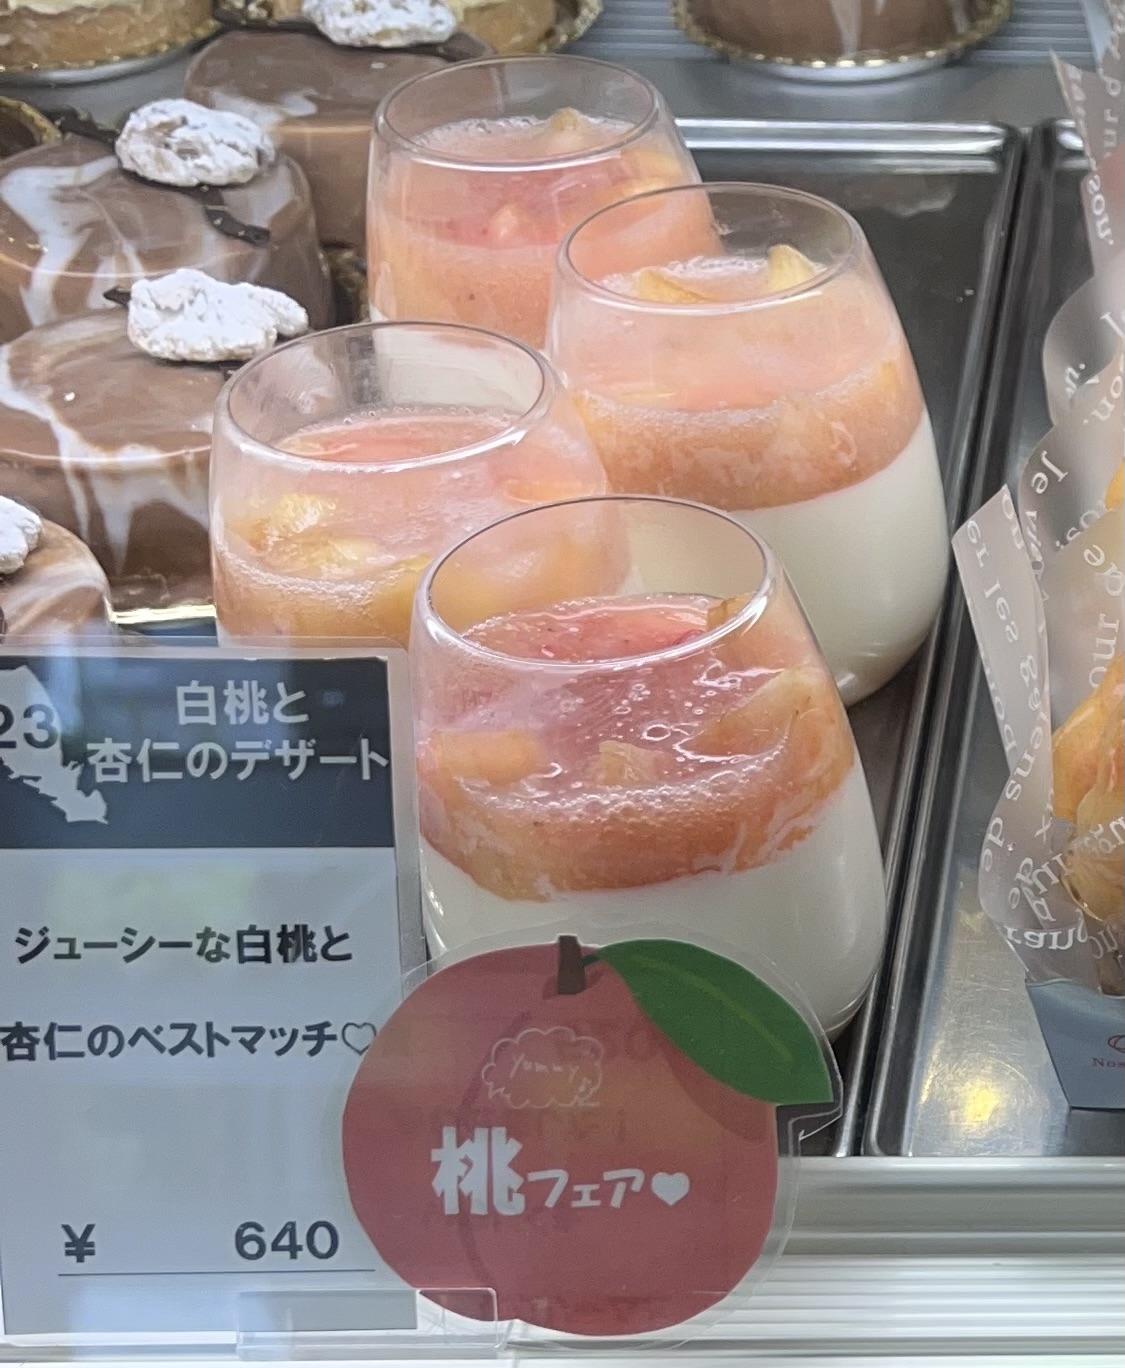 白桃と杏仁のデザート”販売再開しました | ふじみ野の洋菓子店